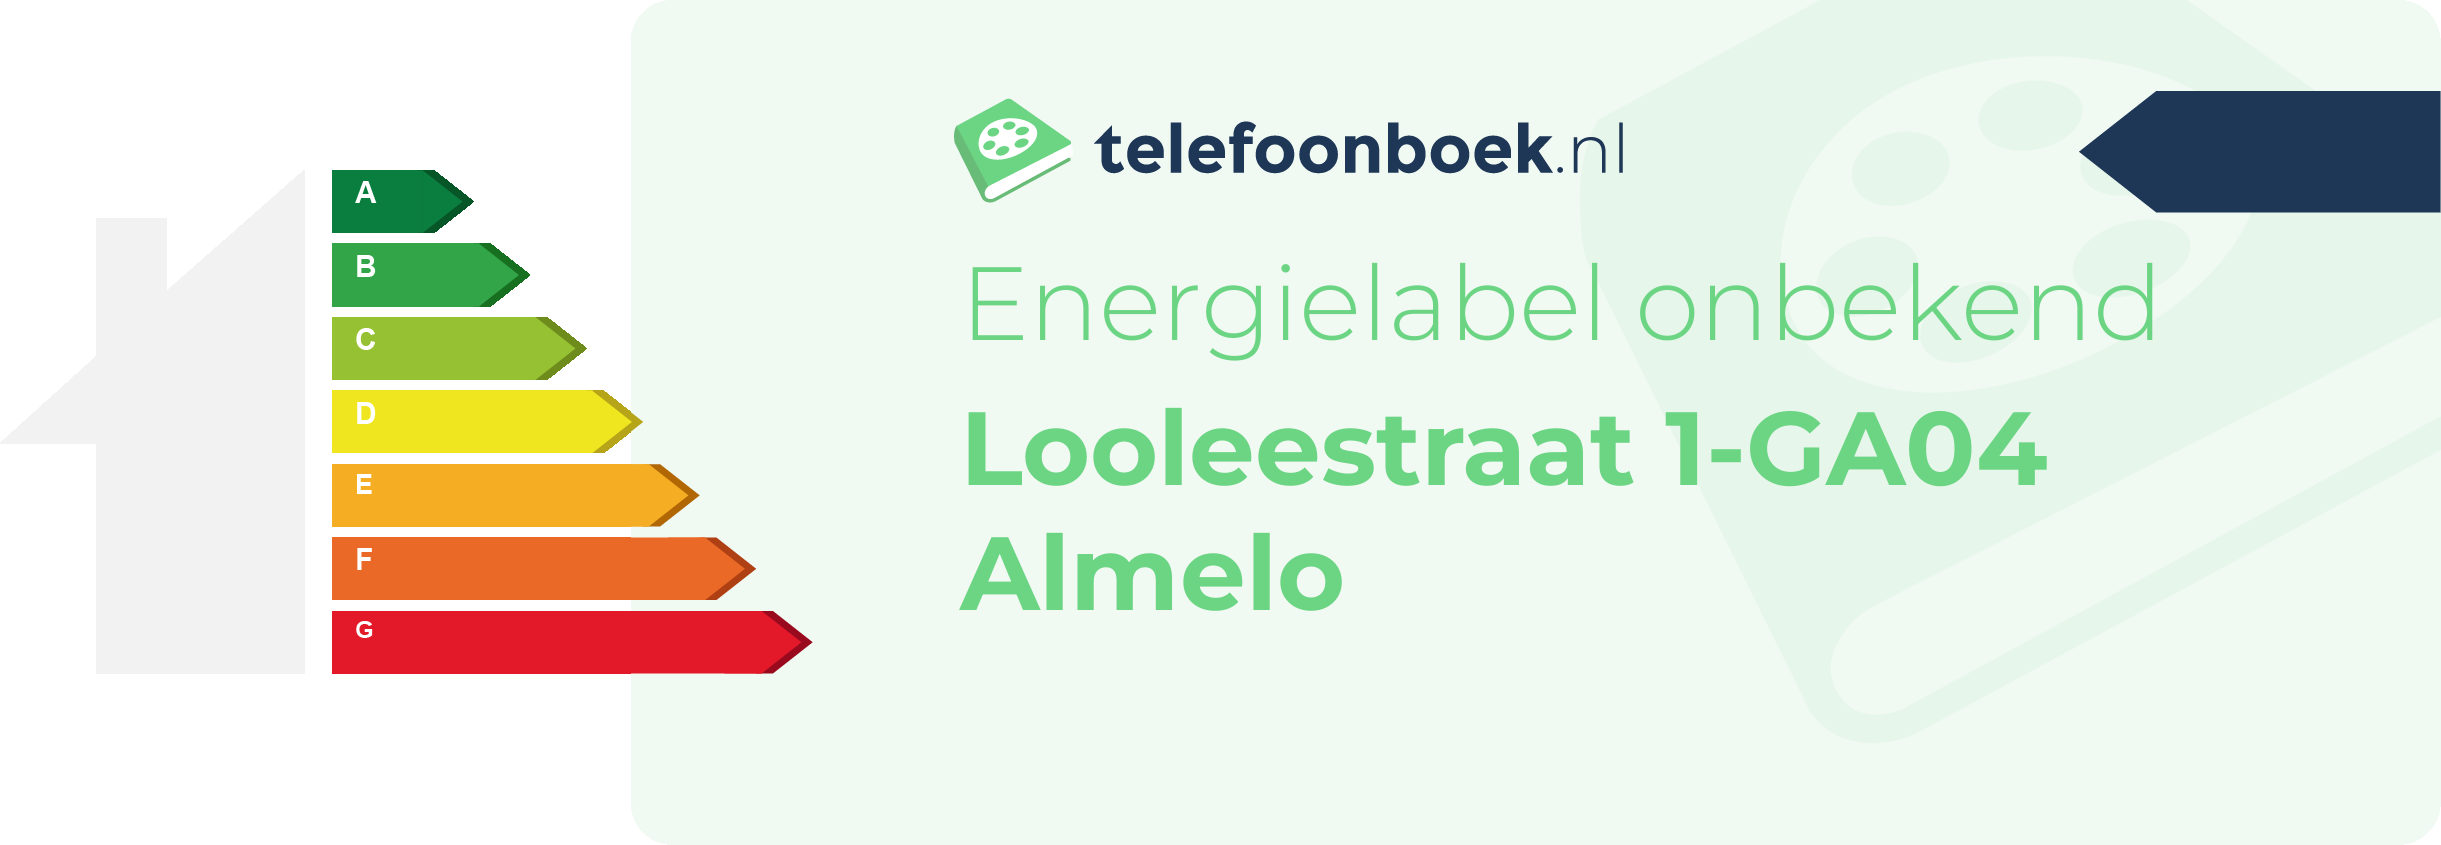 Energielabel Looleestraat 1-GA04 Almelo